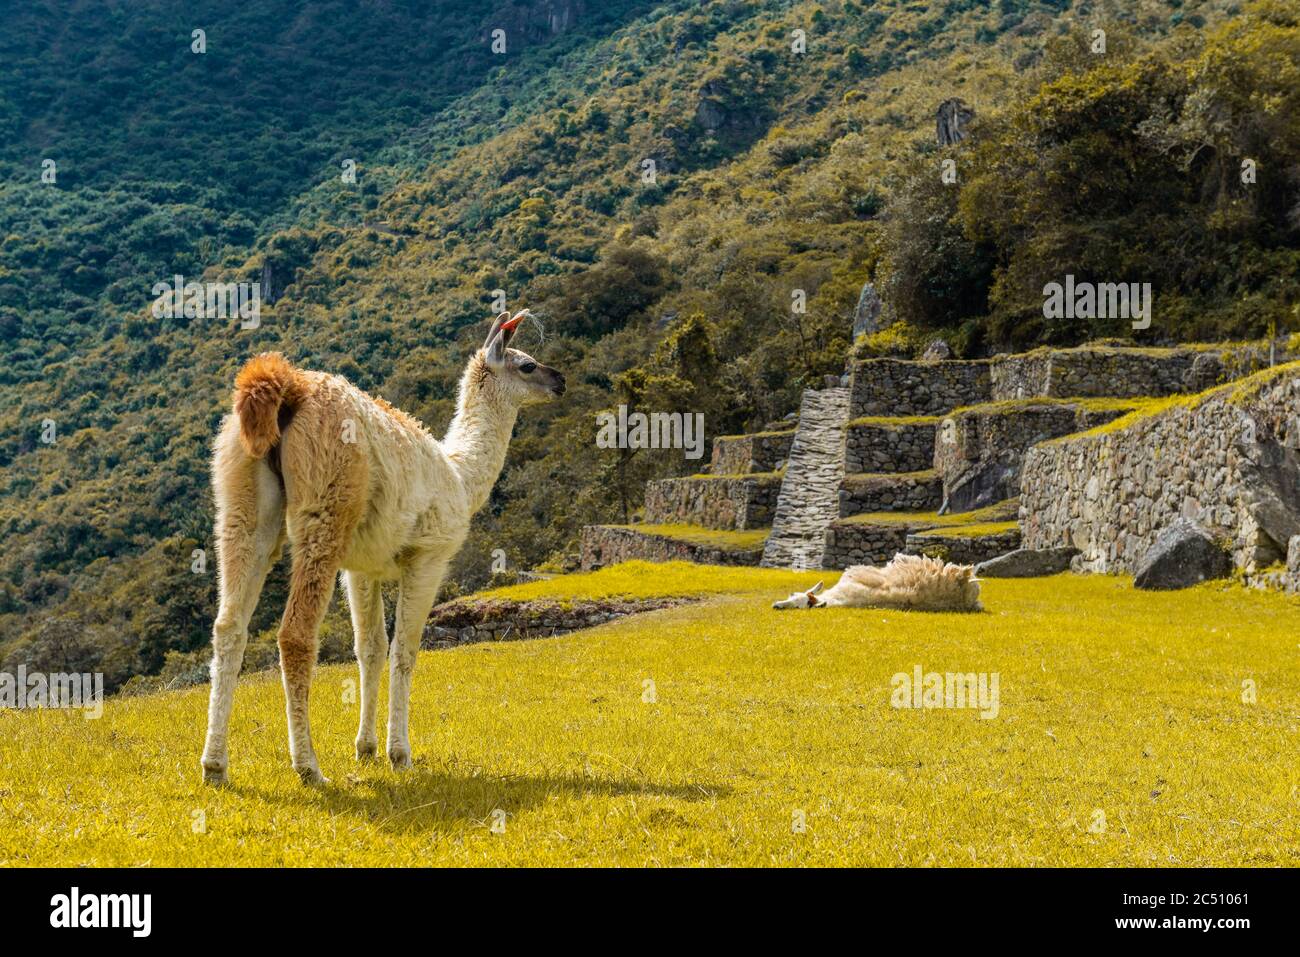 Two llama (Lama glama) in the inca agriculture terraces of Machu Picchu, Cusco, Peru. Stock Photo